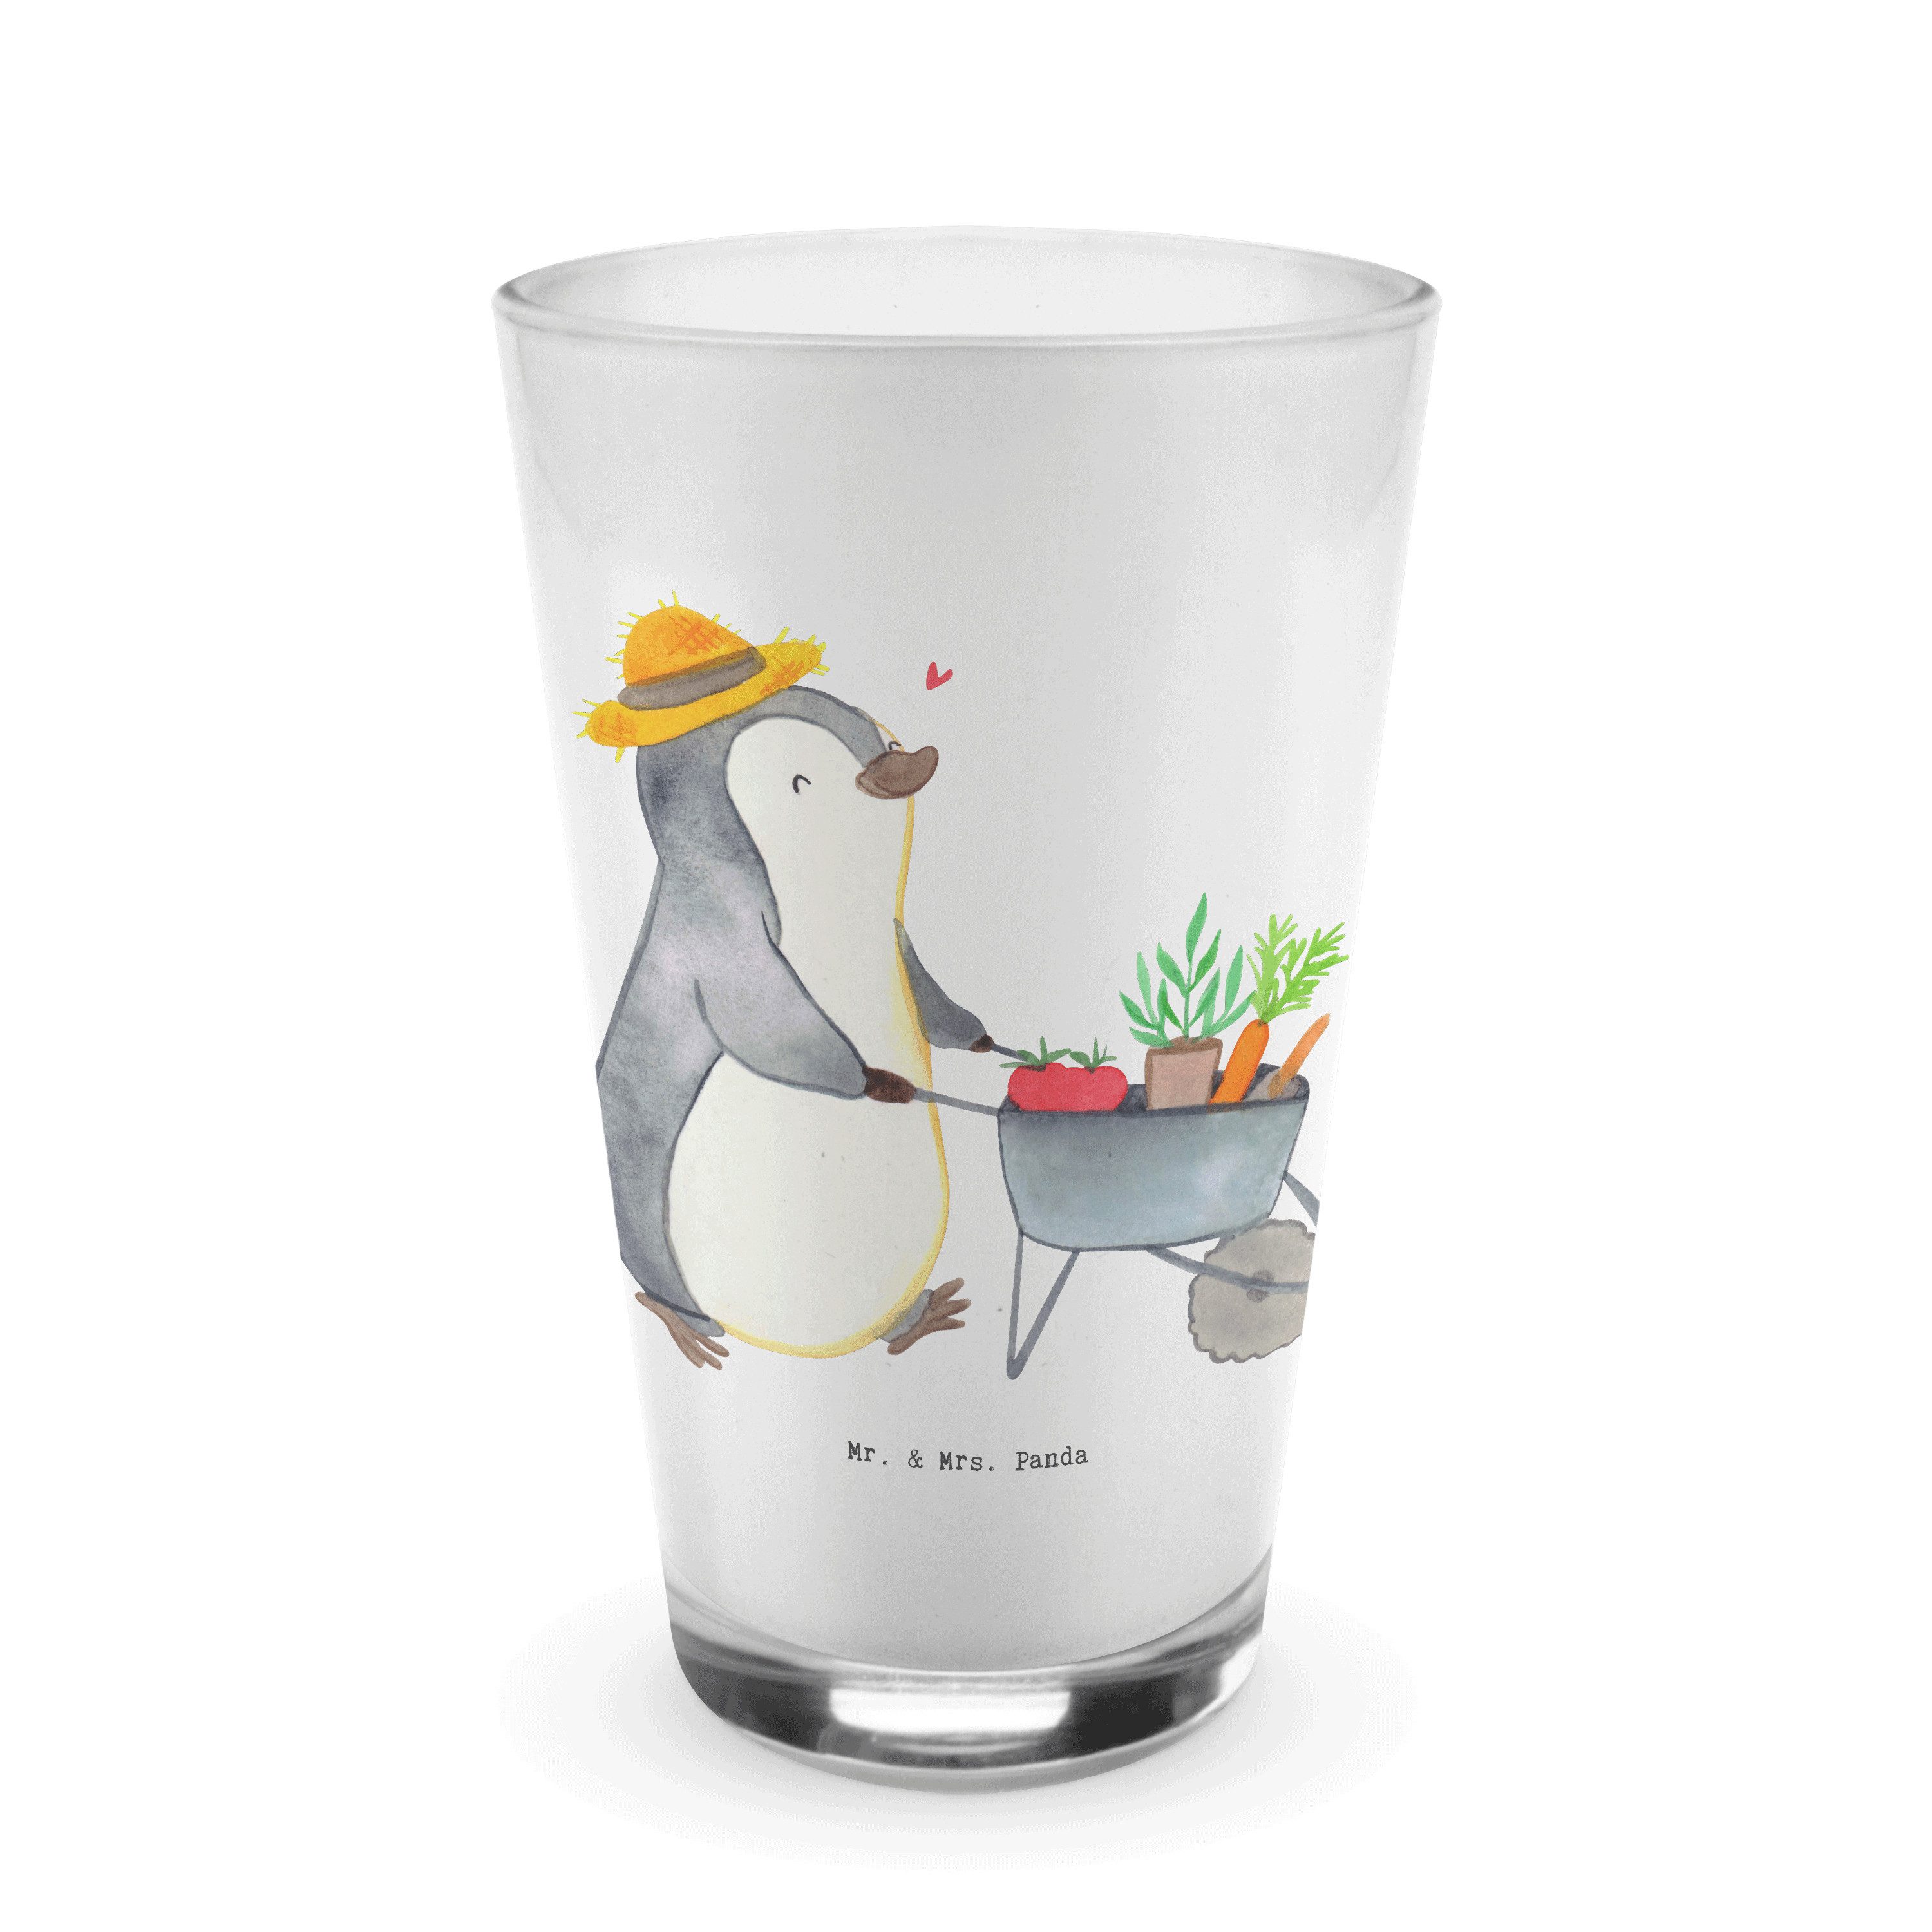 Mr. & Mrs. Panda Glas Pinguin Gartenarbeit - Transparent - Geschenk, Gartenpflege, Cappucci, Premium Glas, Design mit Herz